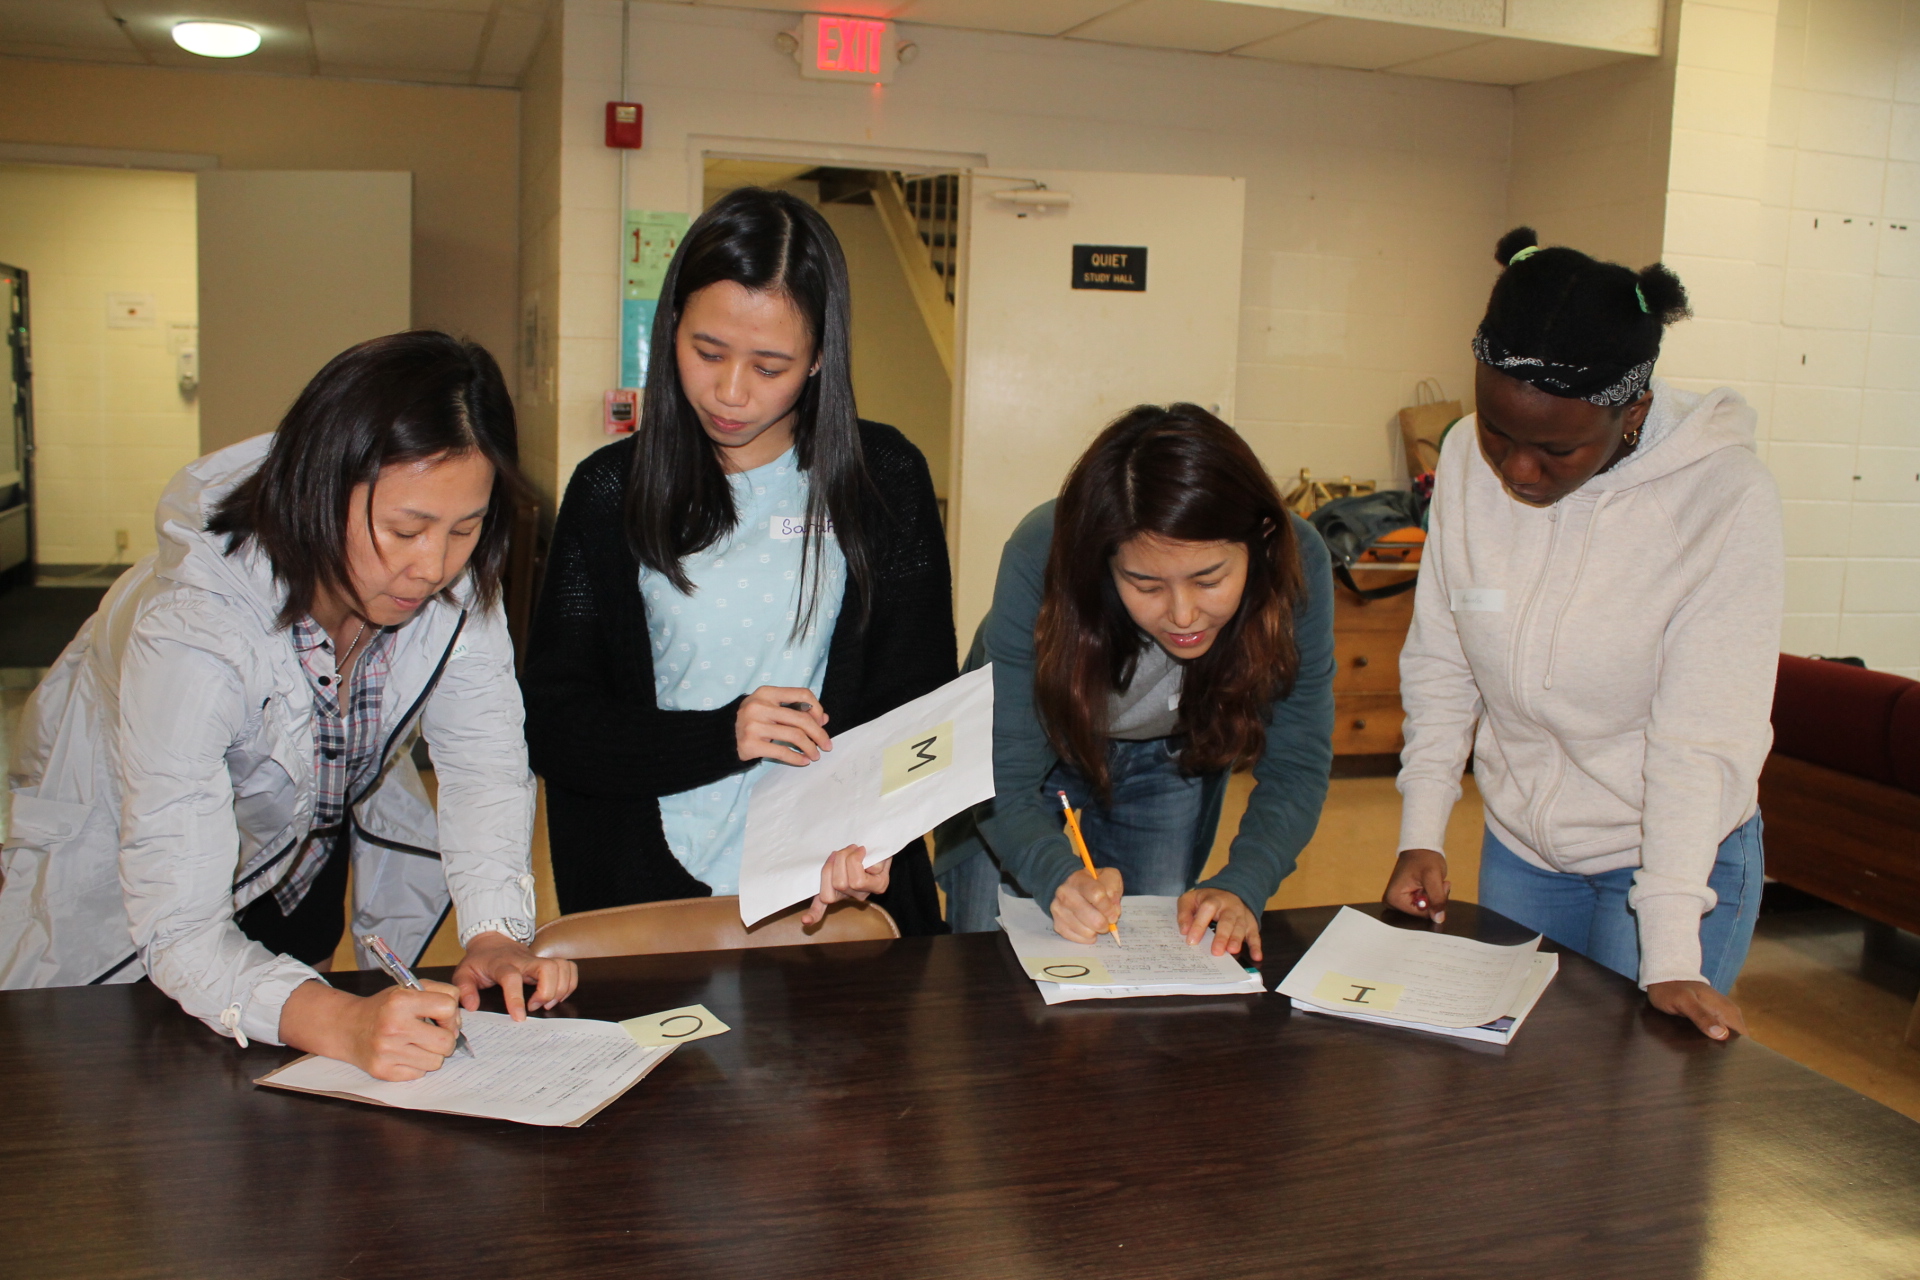 德克萨斯州国际教育联盟项目参与者做作业的照片.